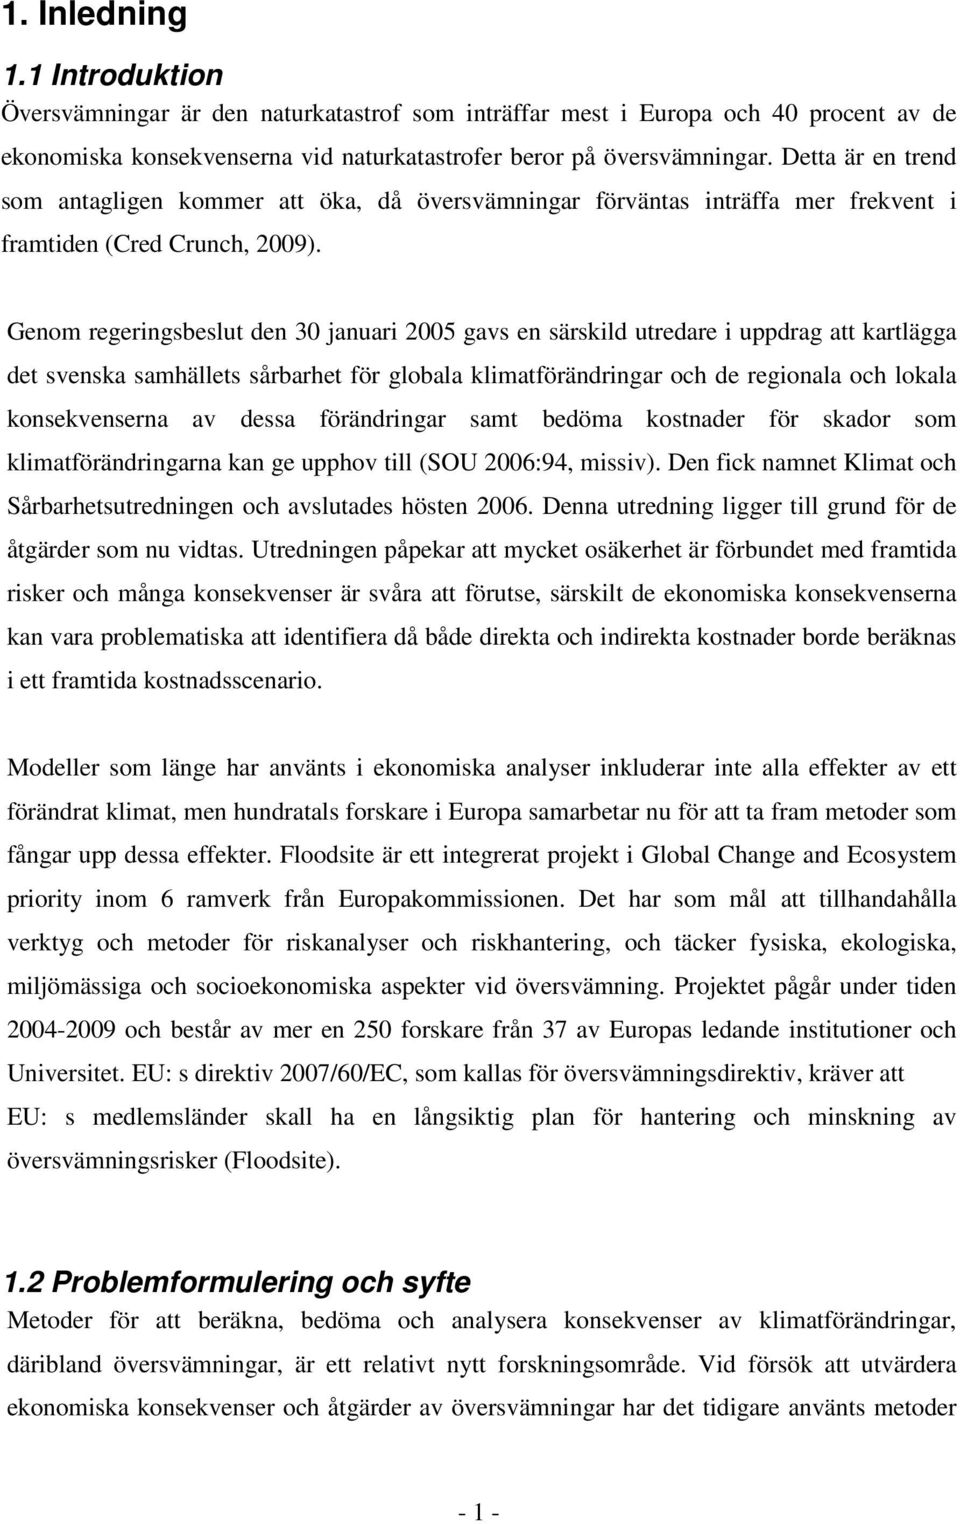 Genom regeringsbeslut den 30 januari 2005 gavs en särskild utredare i uppdrag att kartlägga det svenska samhällets sårbarhet för globala klimatförändringar och de regionala och lokala konsekvenserna